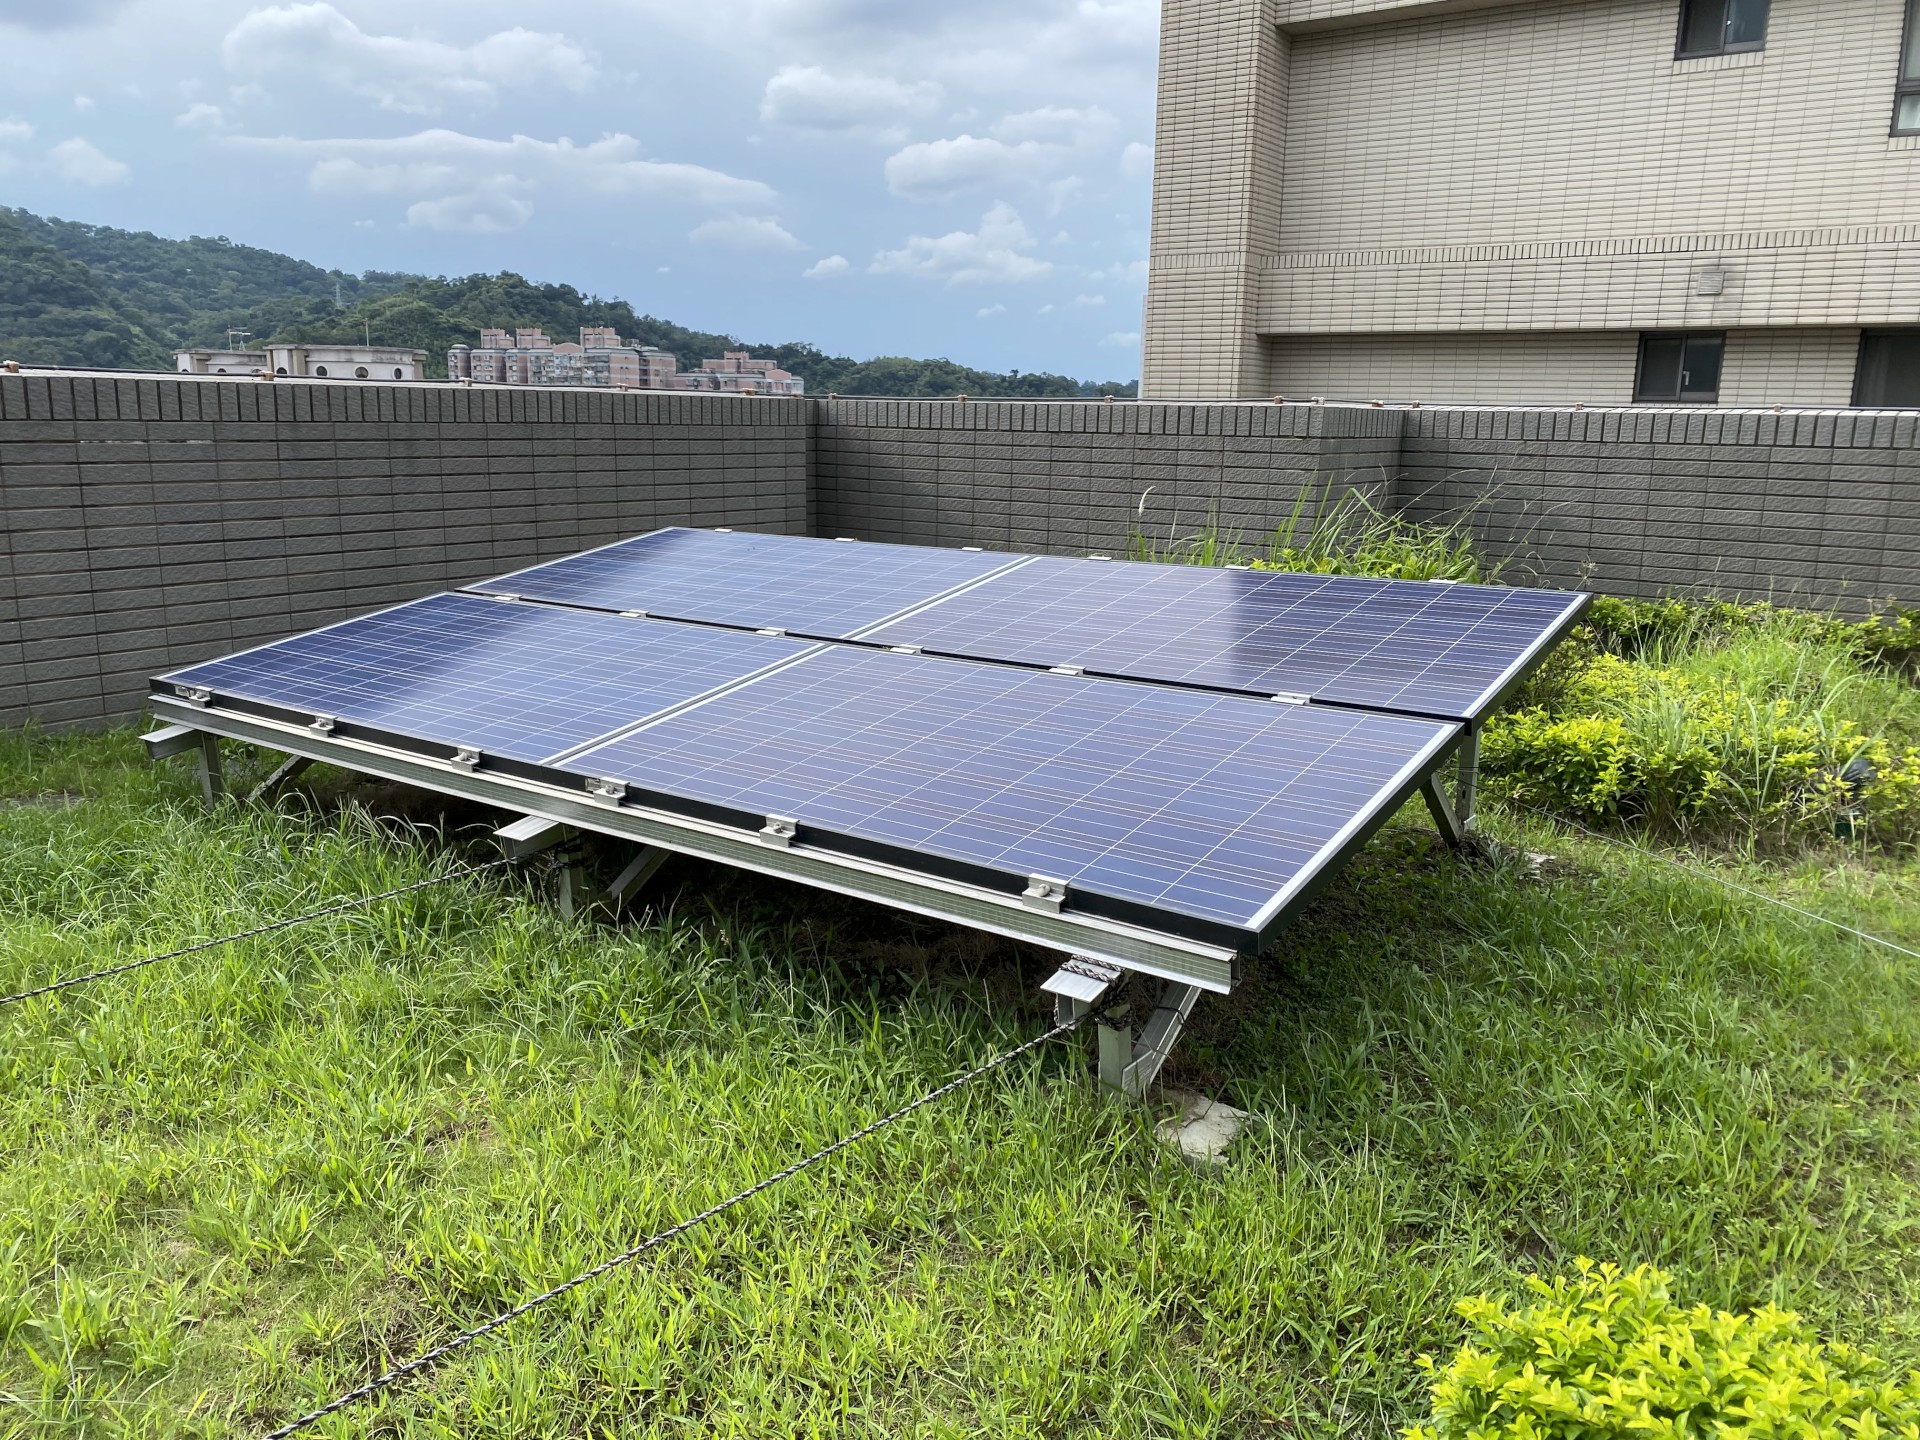 5.將捷家和社區以屋頂綠化降低室內溫度，加上太陽能板發電，節省夏季電費